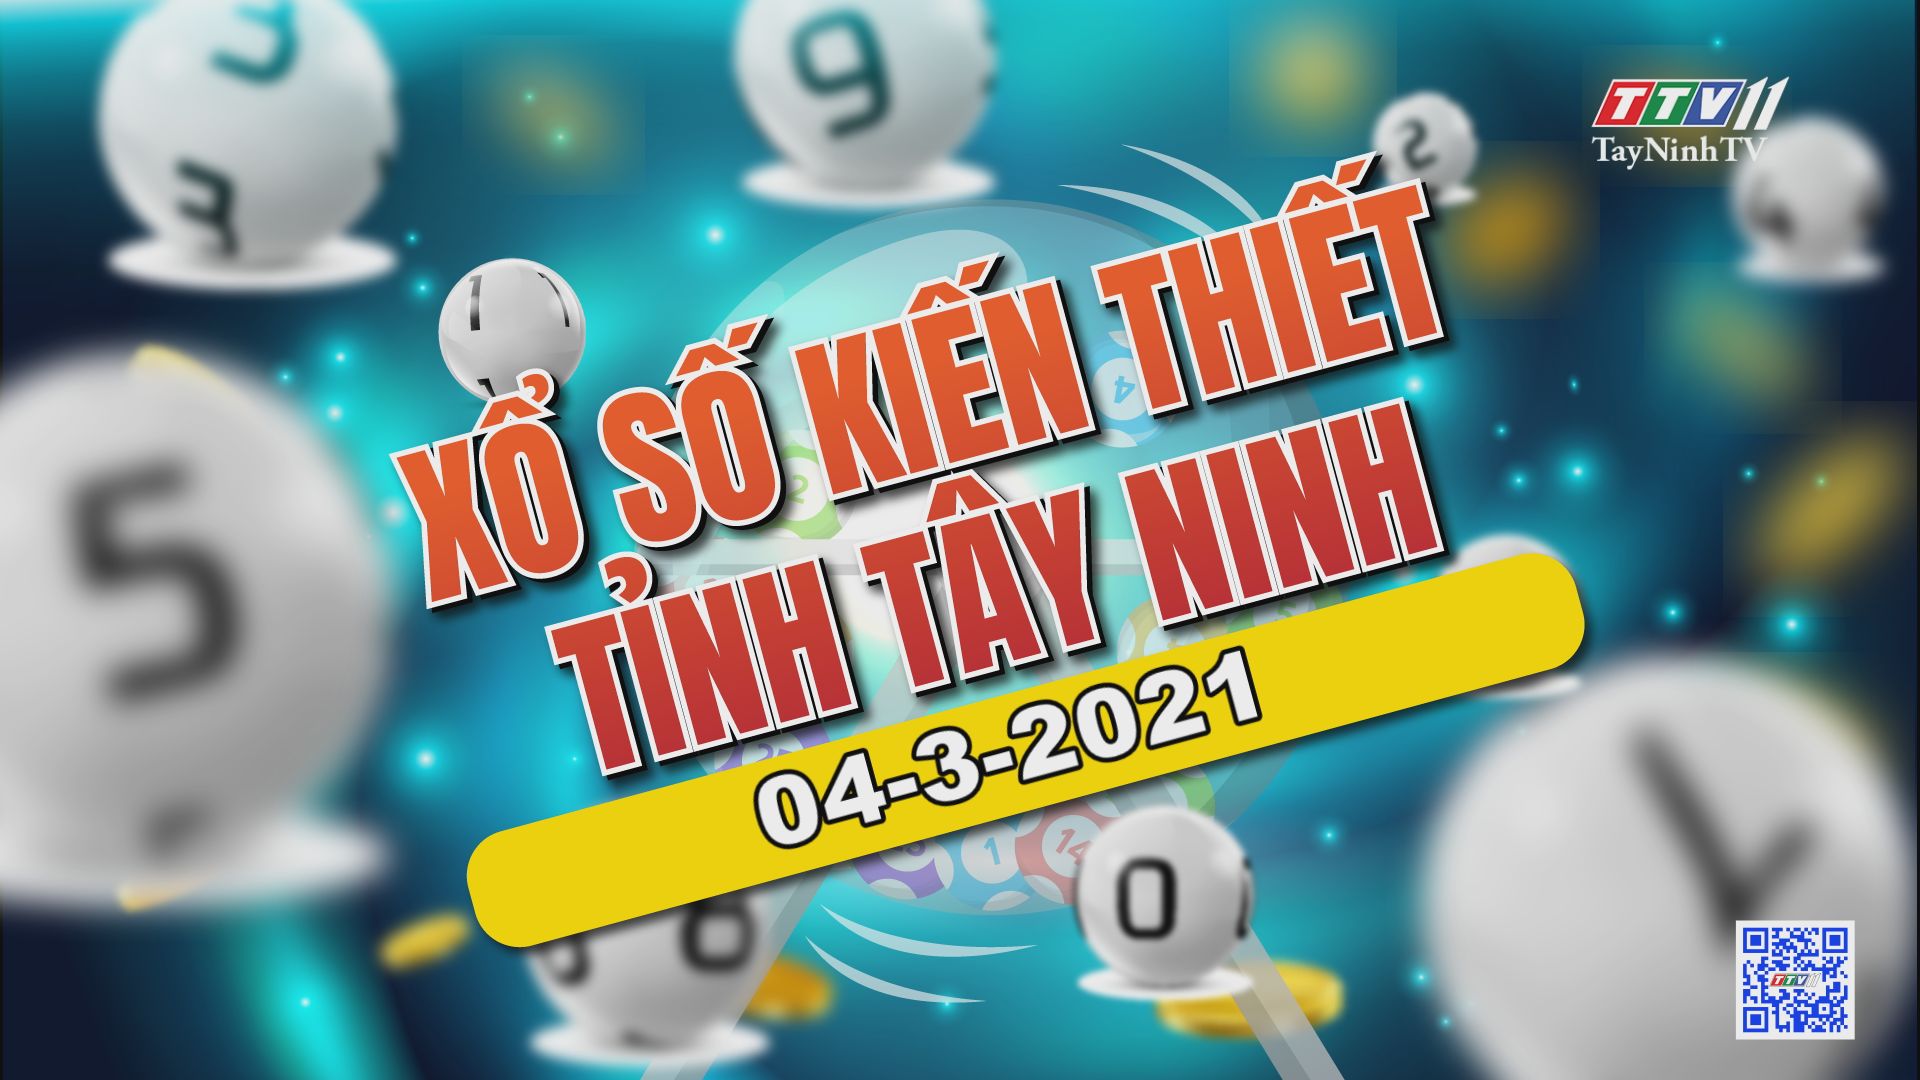 Trực tiếp Xổ số Tây Ninh ngày 04-3-2021 | TayNinhTVE